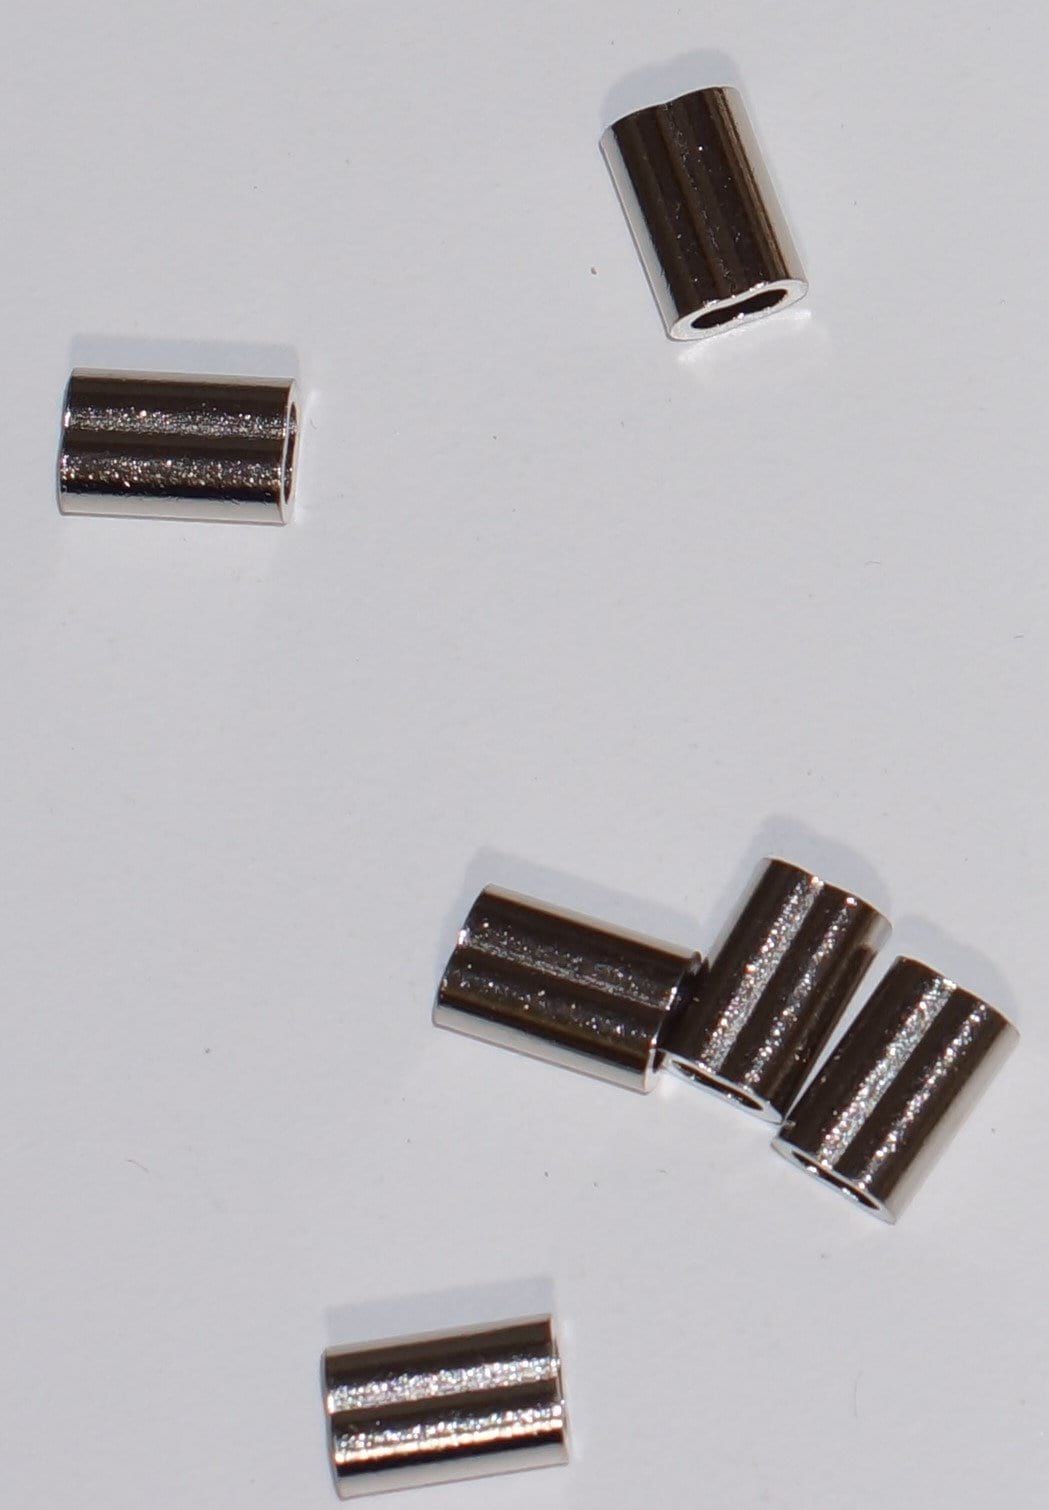 2.3mm mini crimps mono or wire (250-450lb mono) (Black or Nickel) - Spear Gods